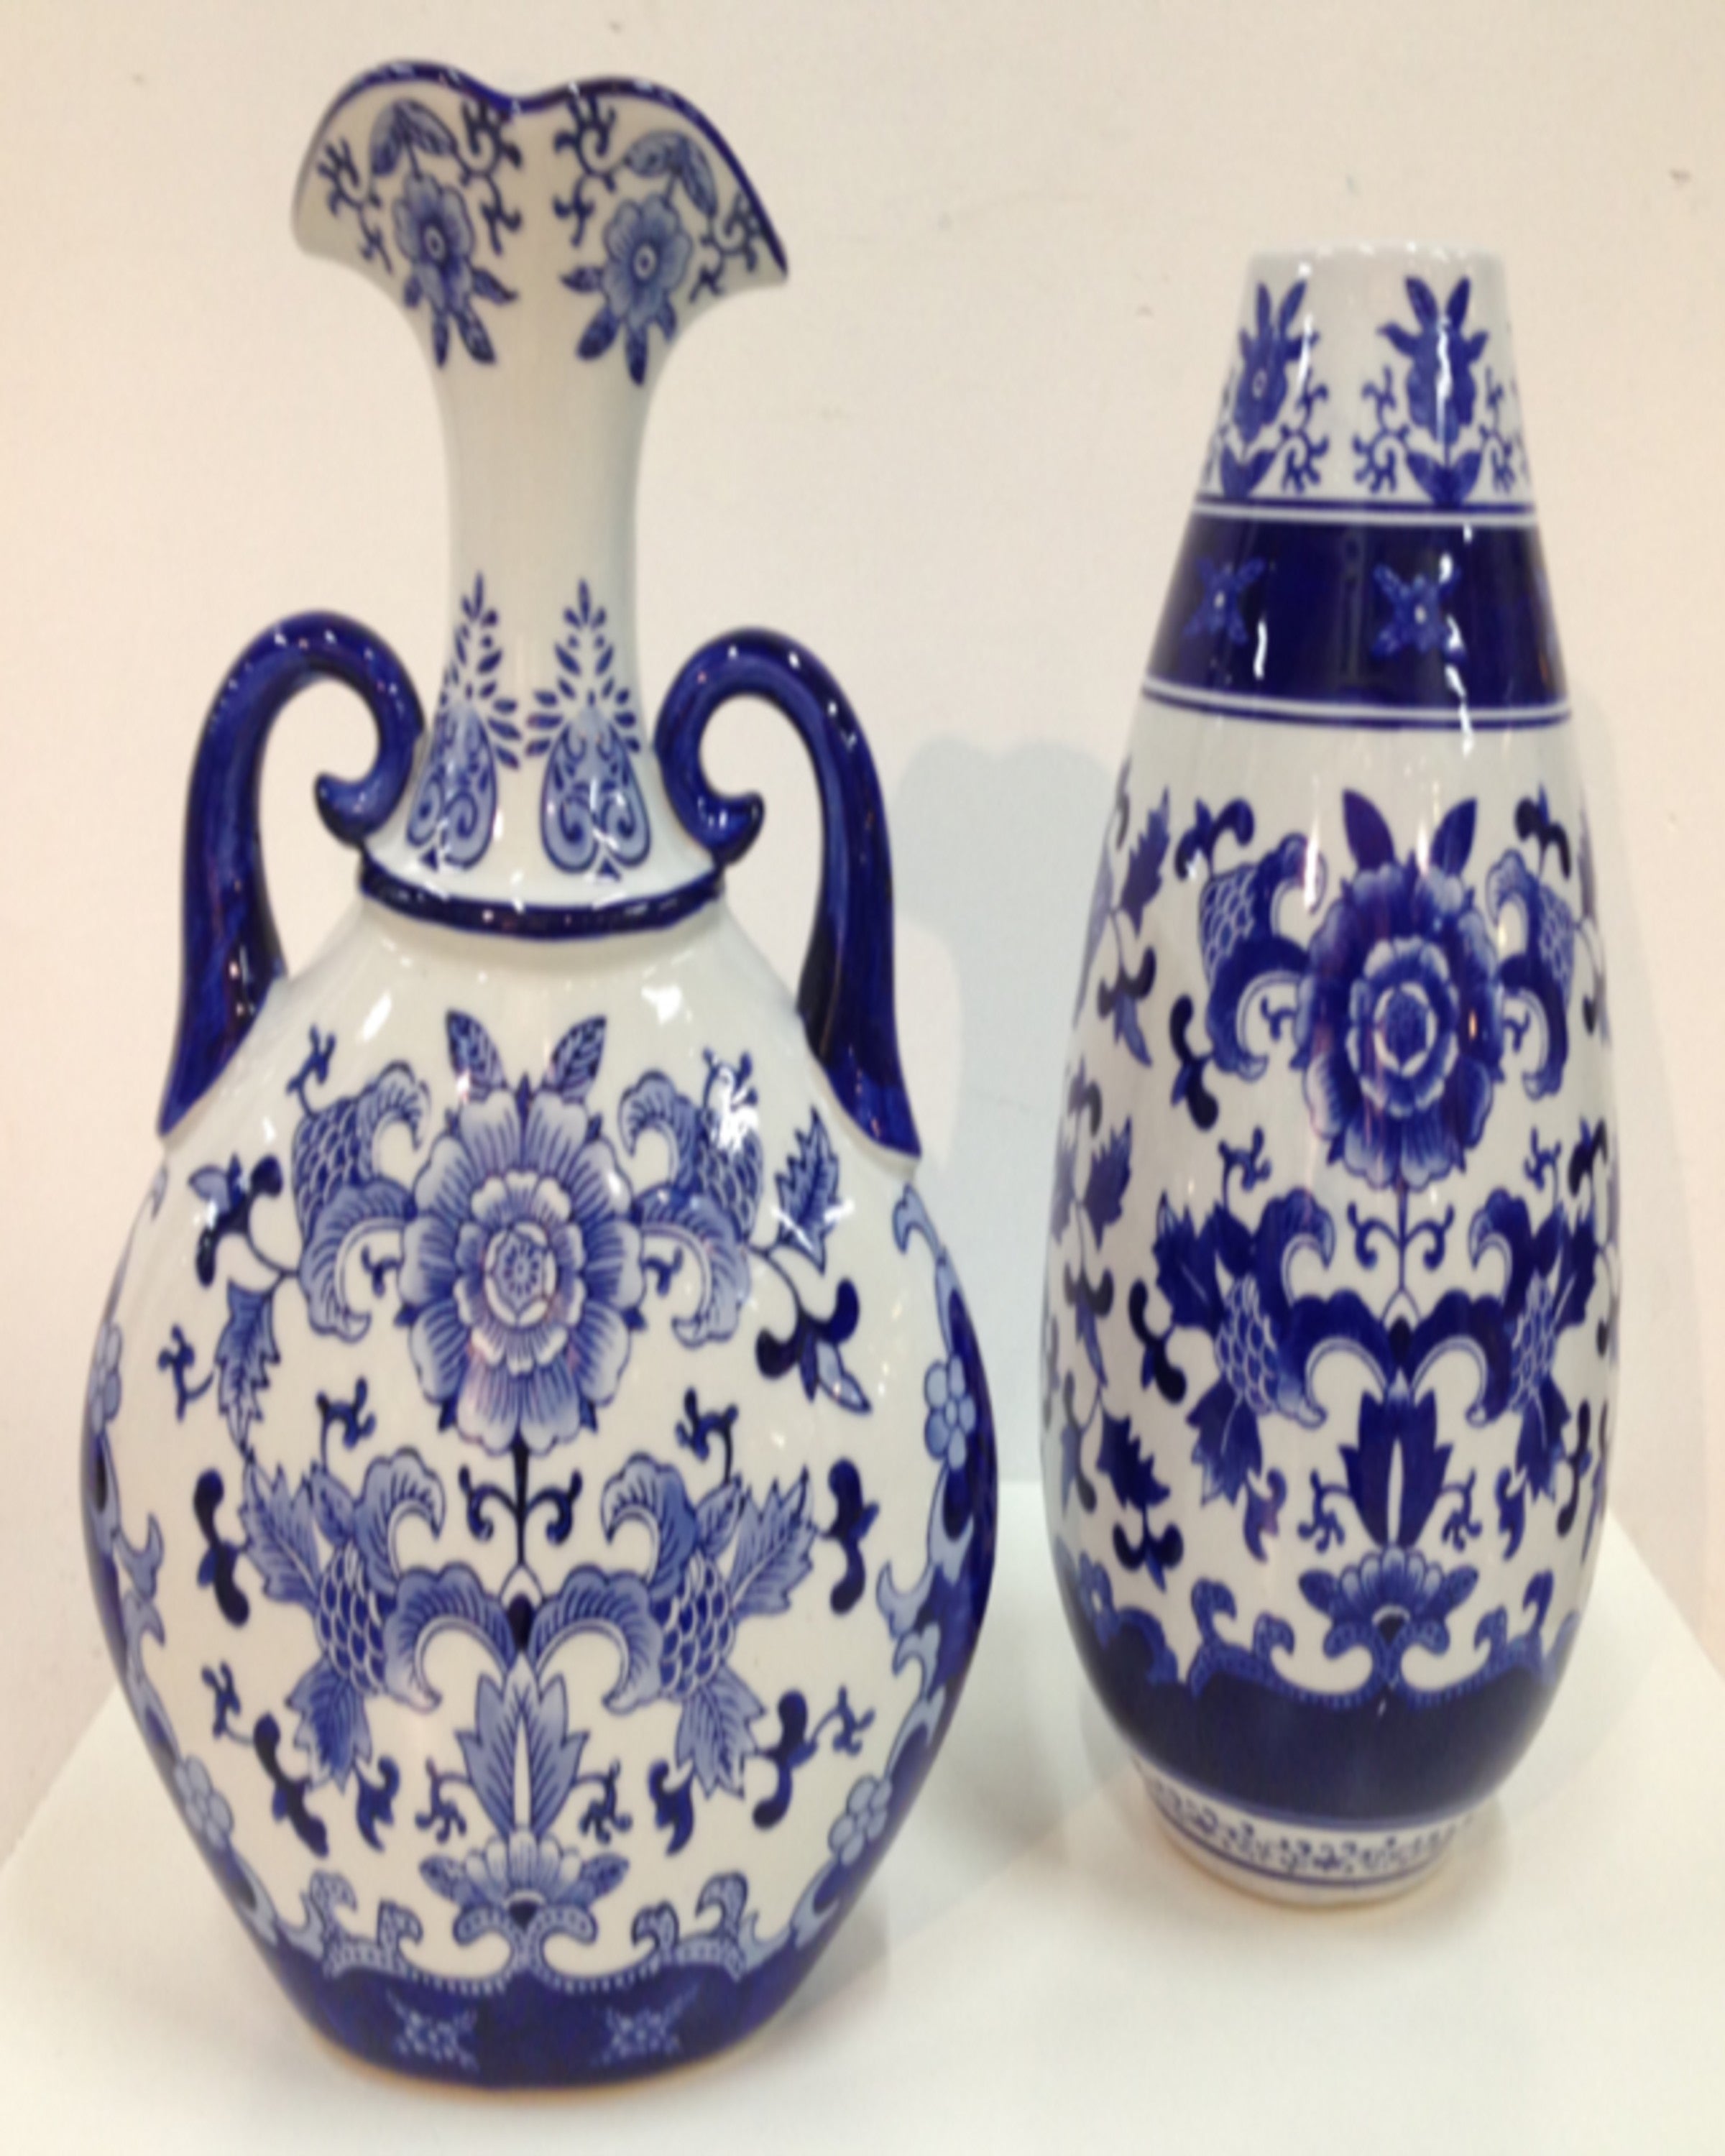 Luxury Vases